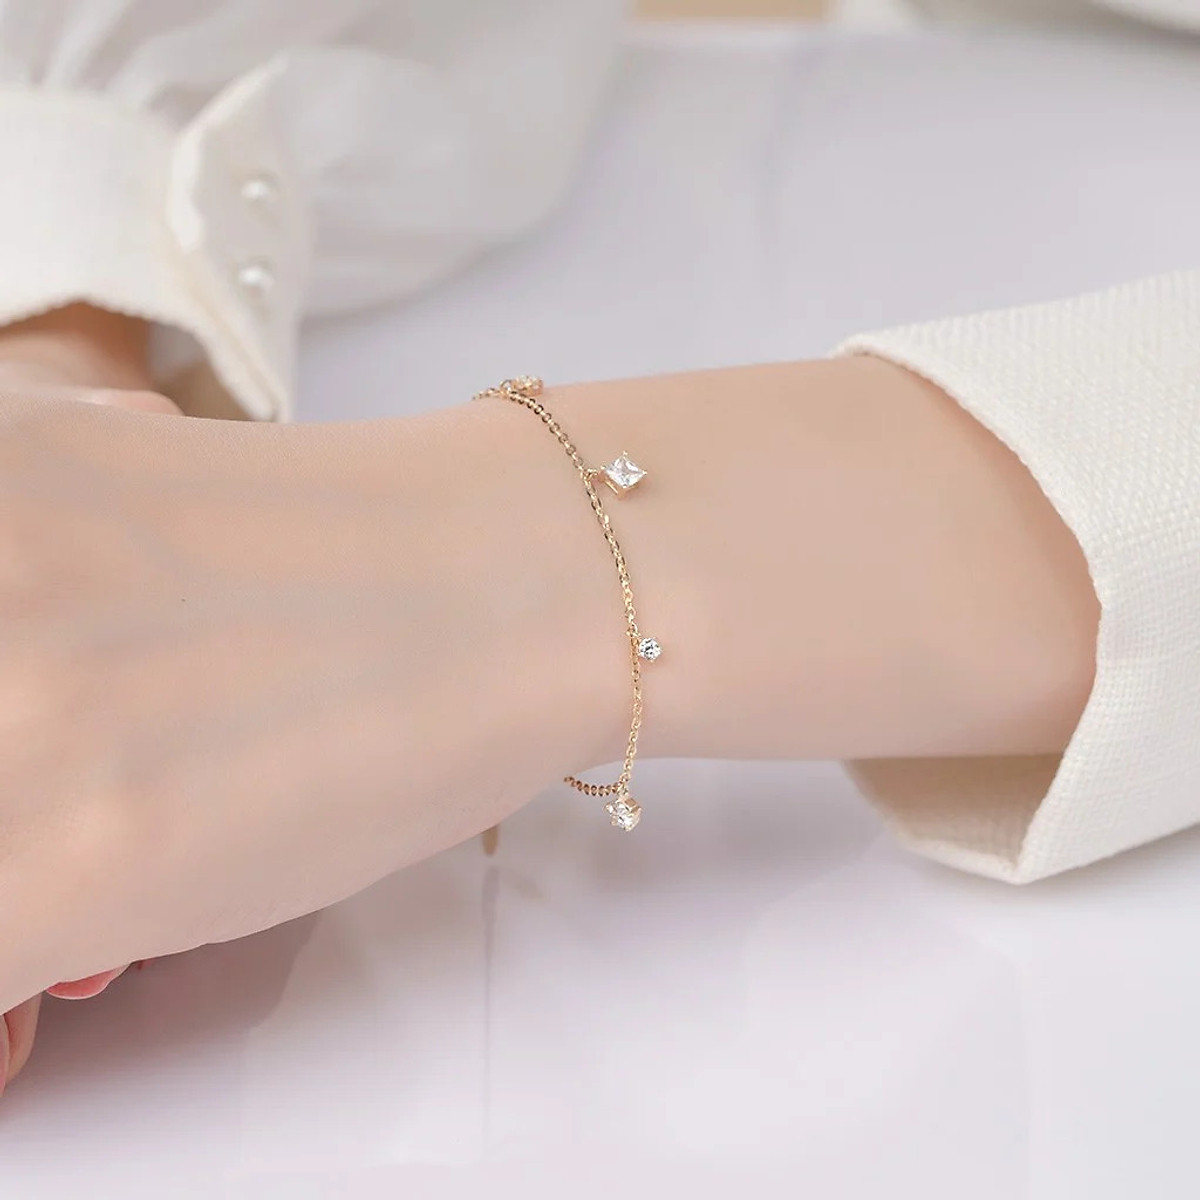 Tại Theo Jewelry, chúng tôi mang đến một loạt các thiết kế độc đáo, từ những chiếc vòng tay đơn giản hàng ngày đến những mẫu trang sức tinh tế cho các dịp đặc biệt.